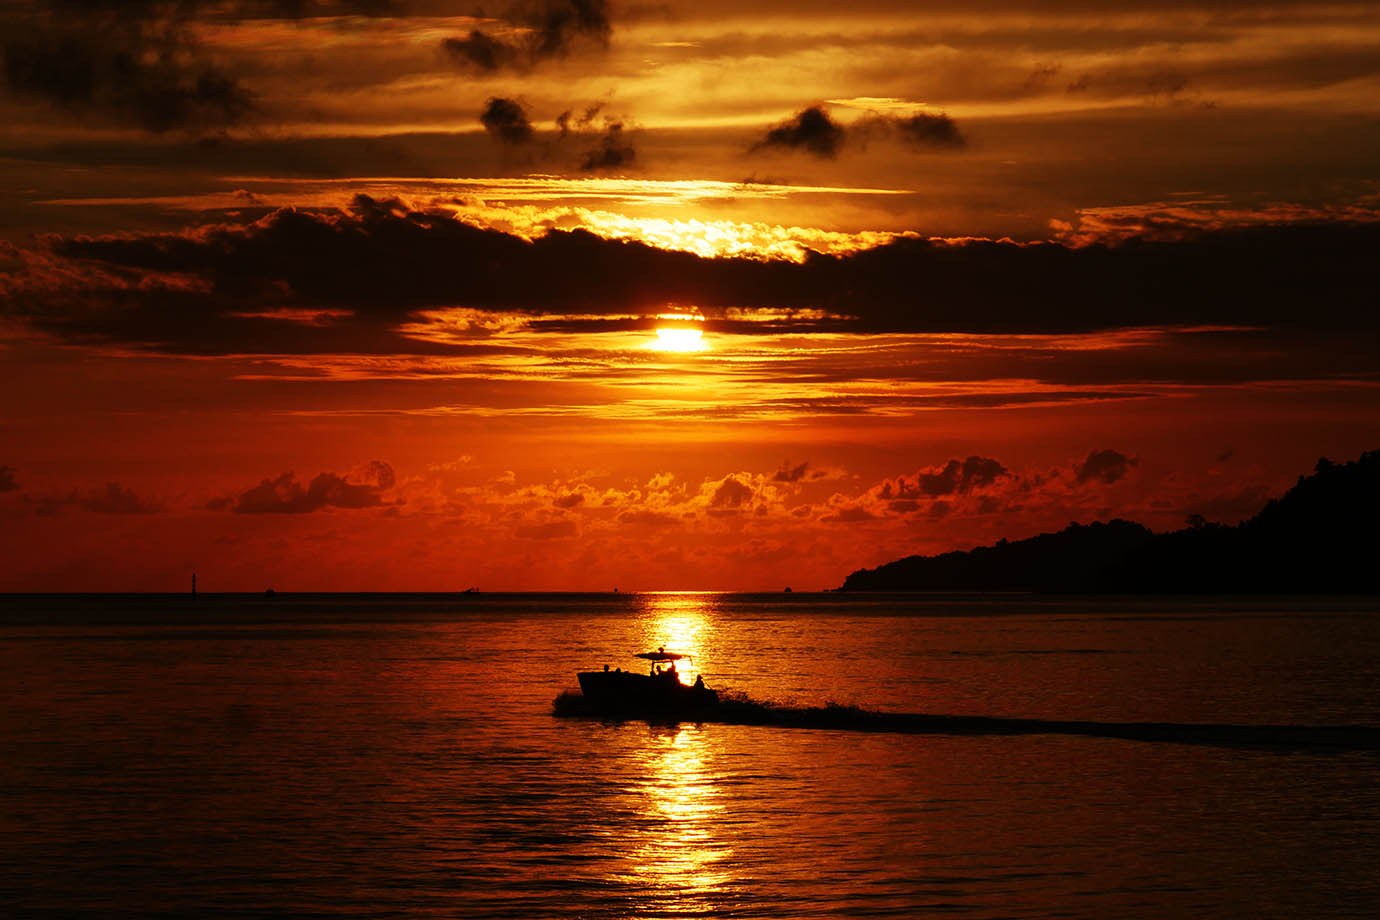 【情緒的な絶景】あまりにも美しすぎるコタキナバルの夕焼け海 / 心の琴線に触れる風景